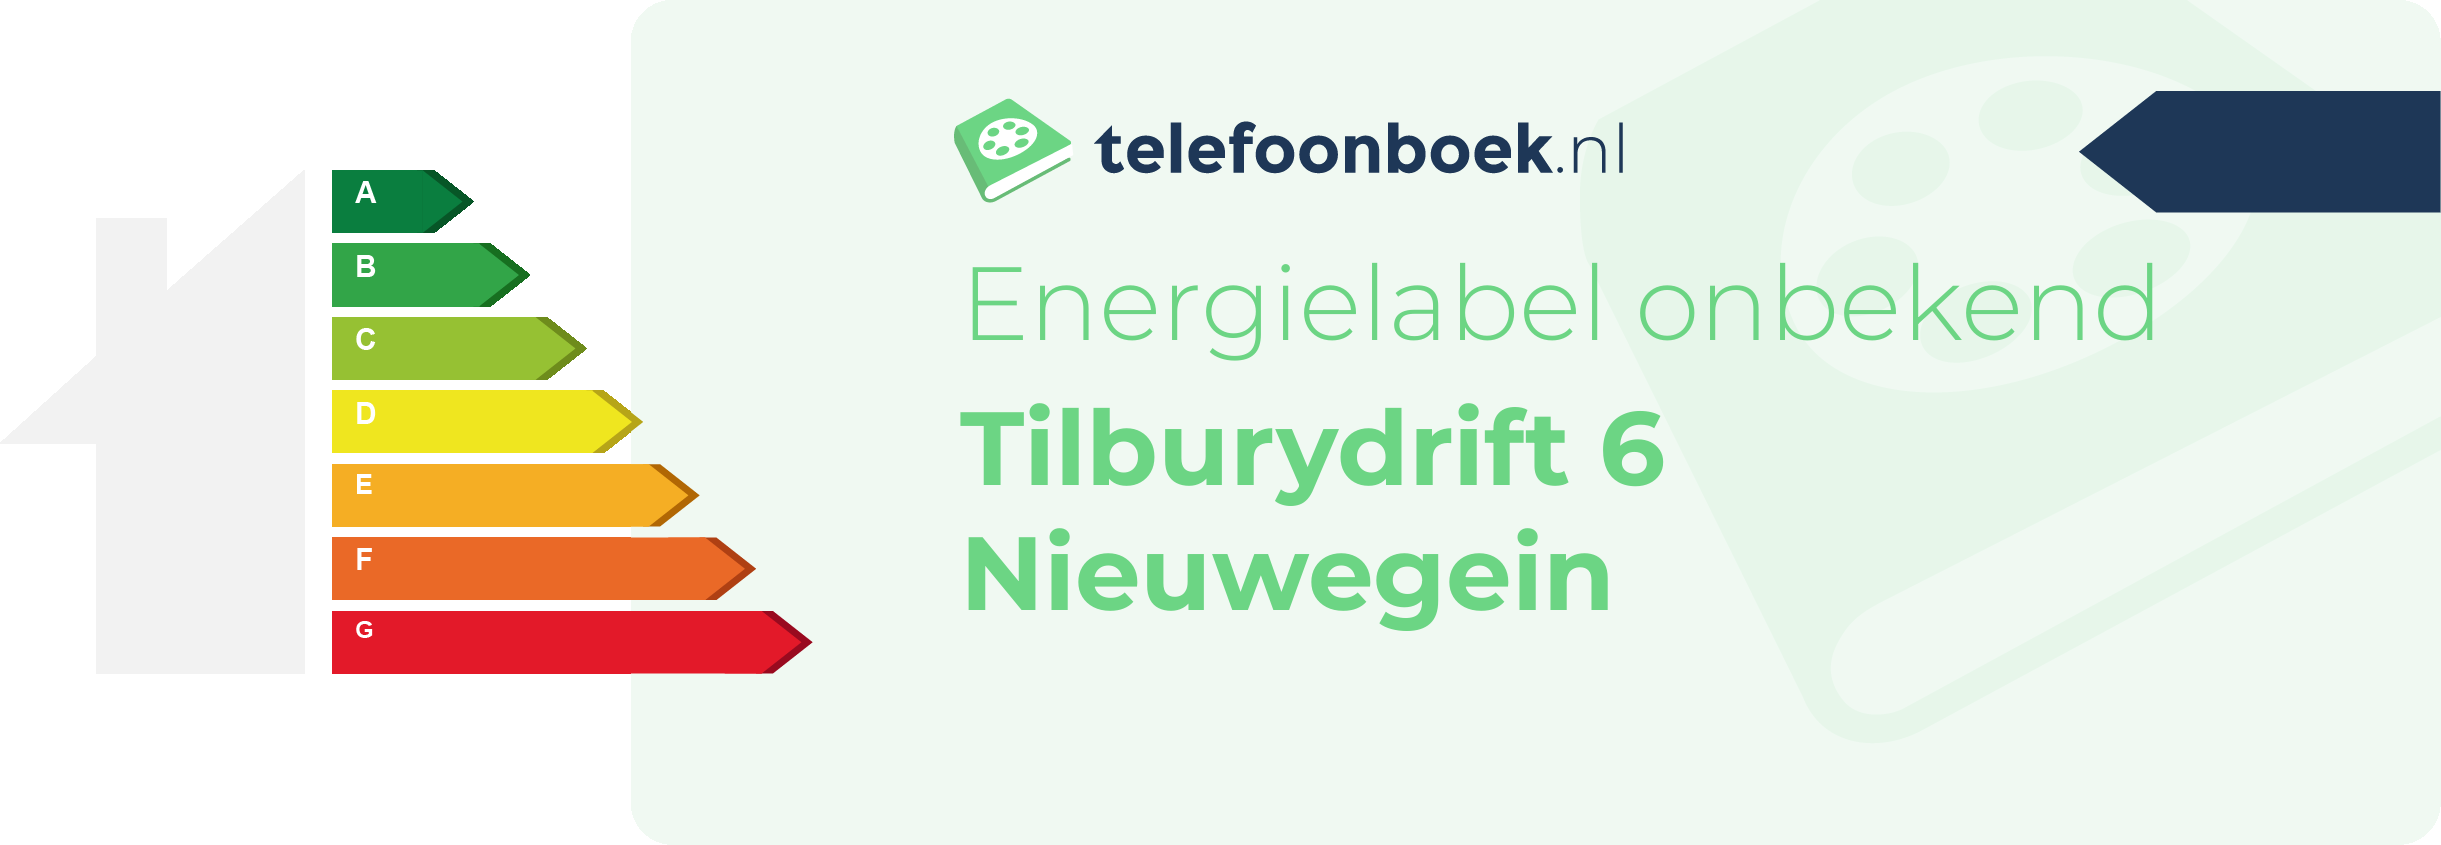 Energielabel Tilburydrift 6 Nieuwegein